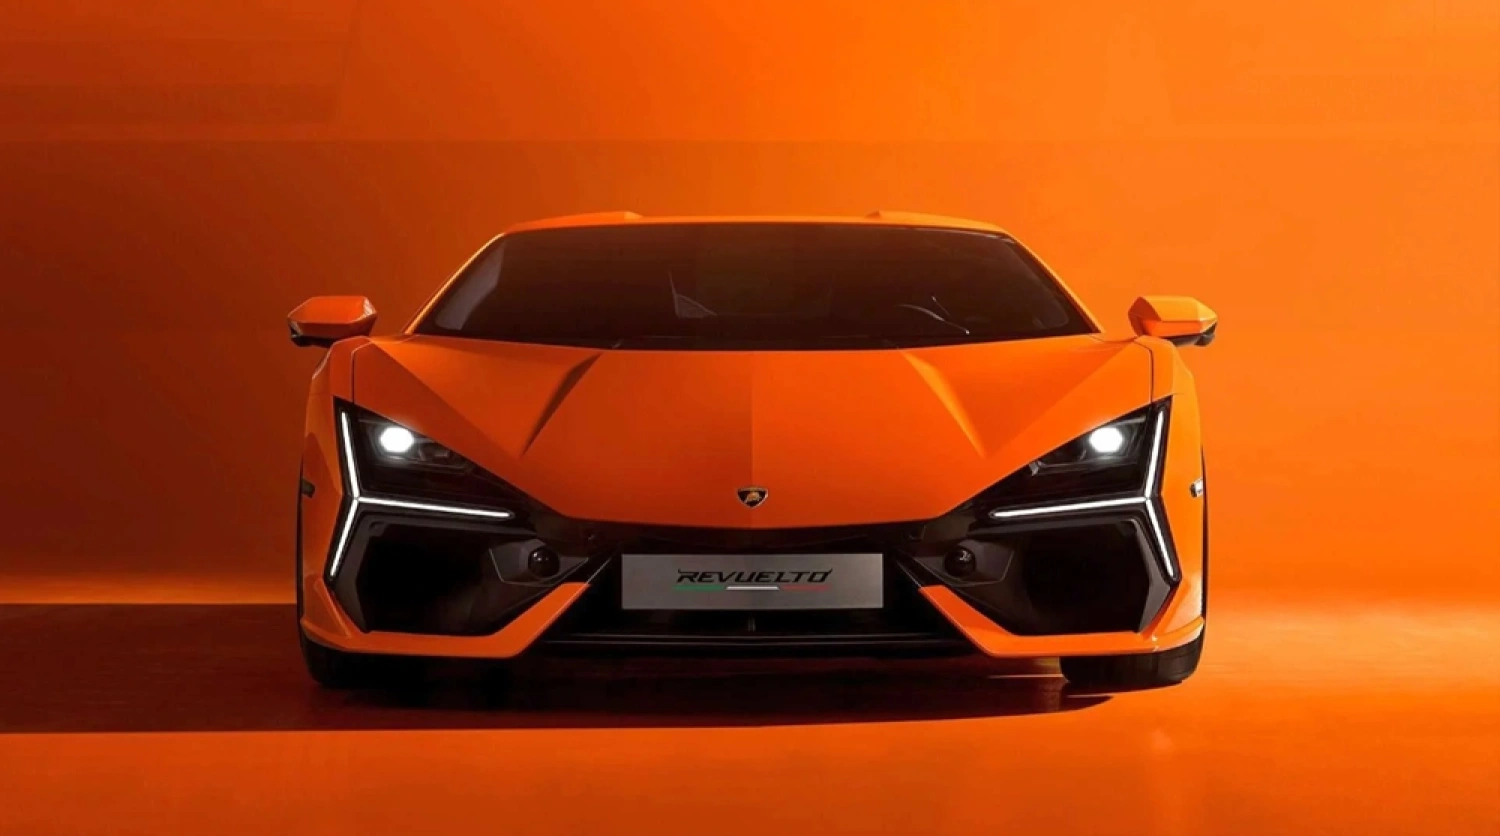 Koniec čakania. Lamborghini vstupuje do elektrickej éry s novým „neskrotným“ žihadlom